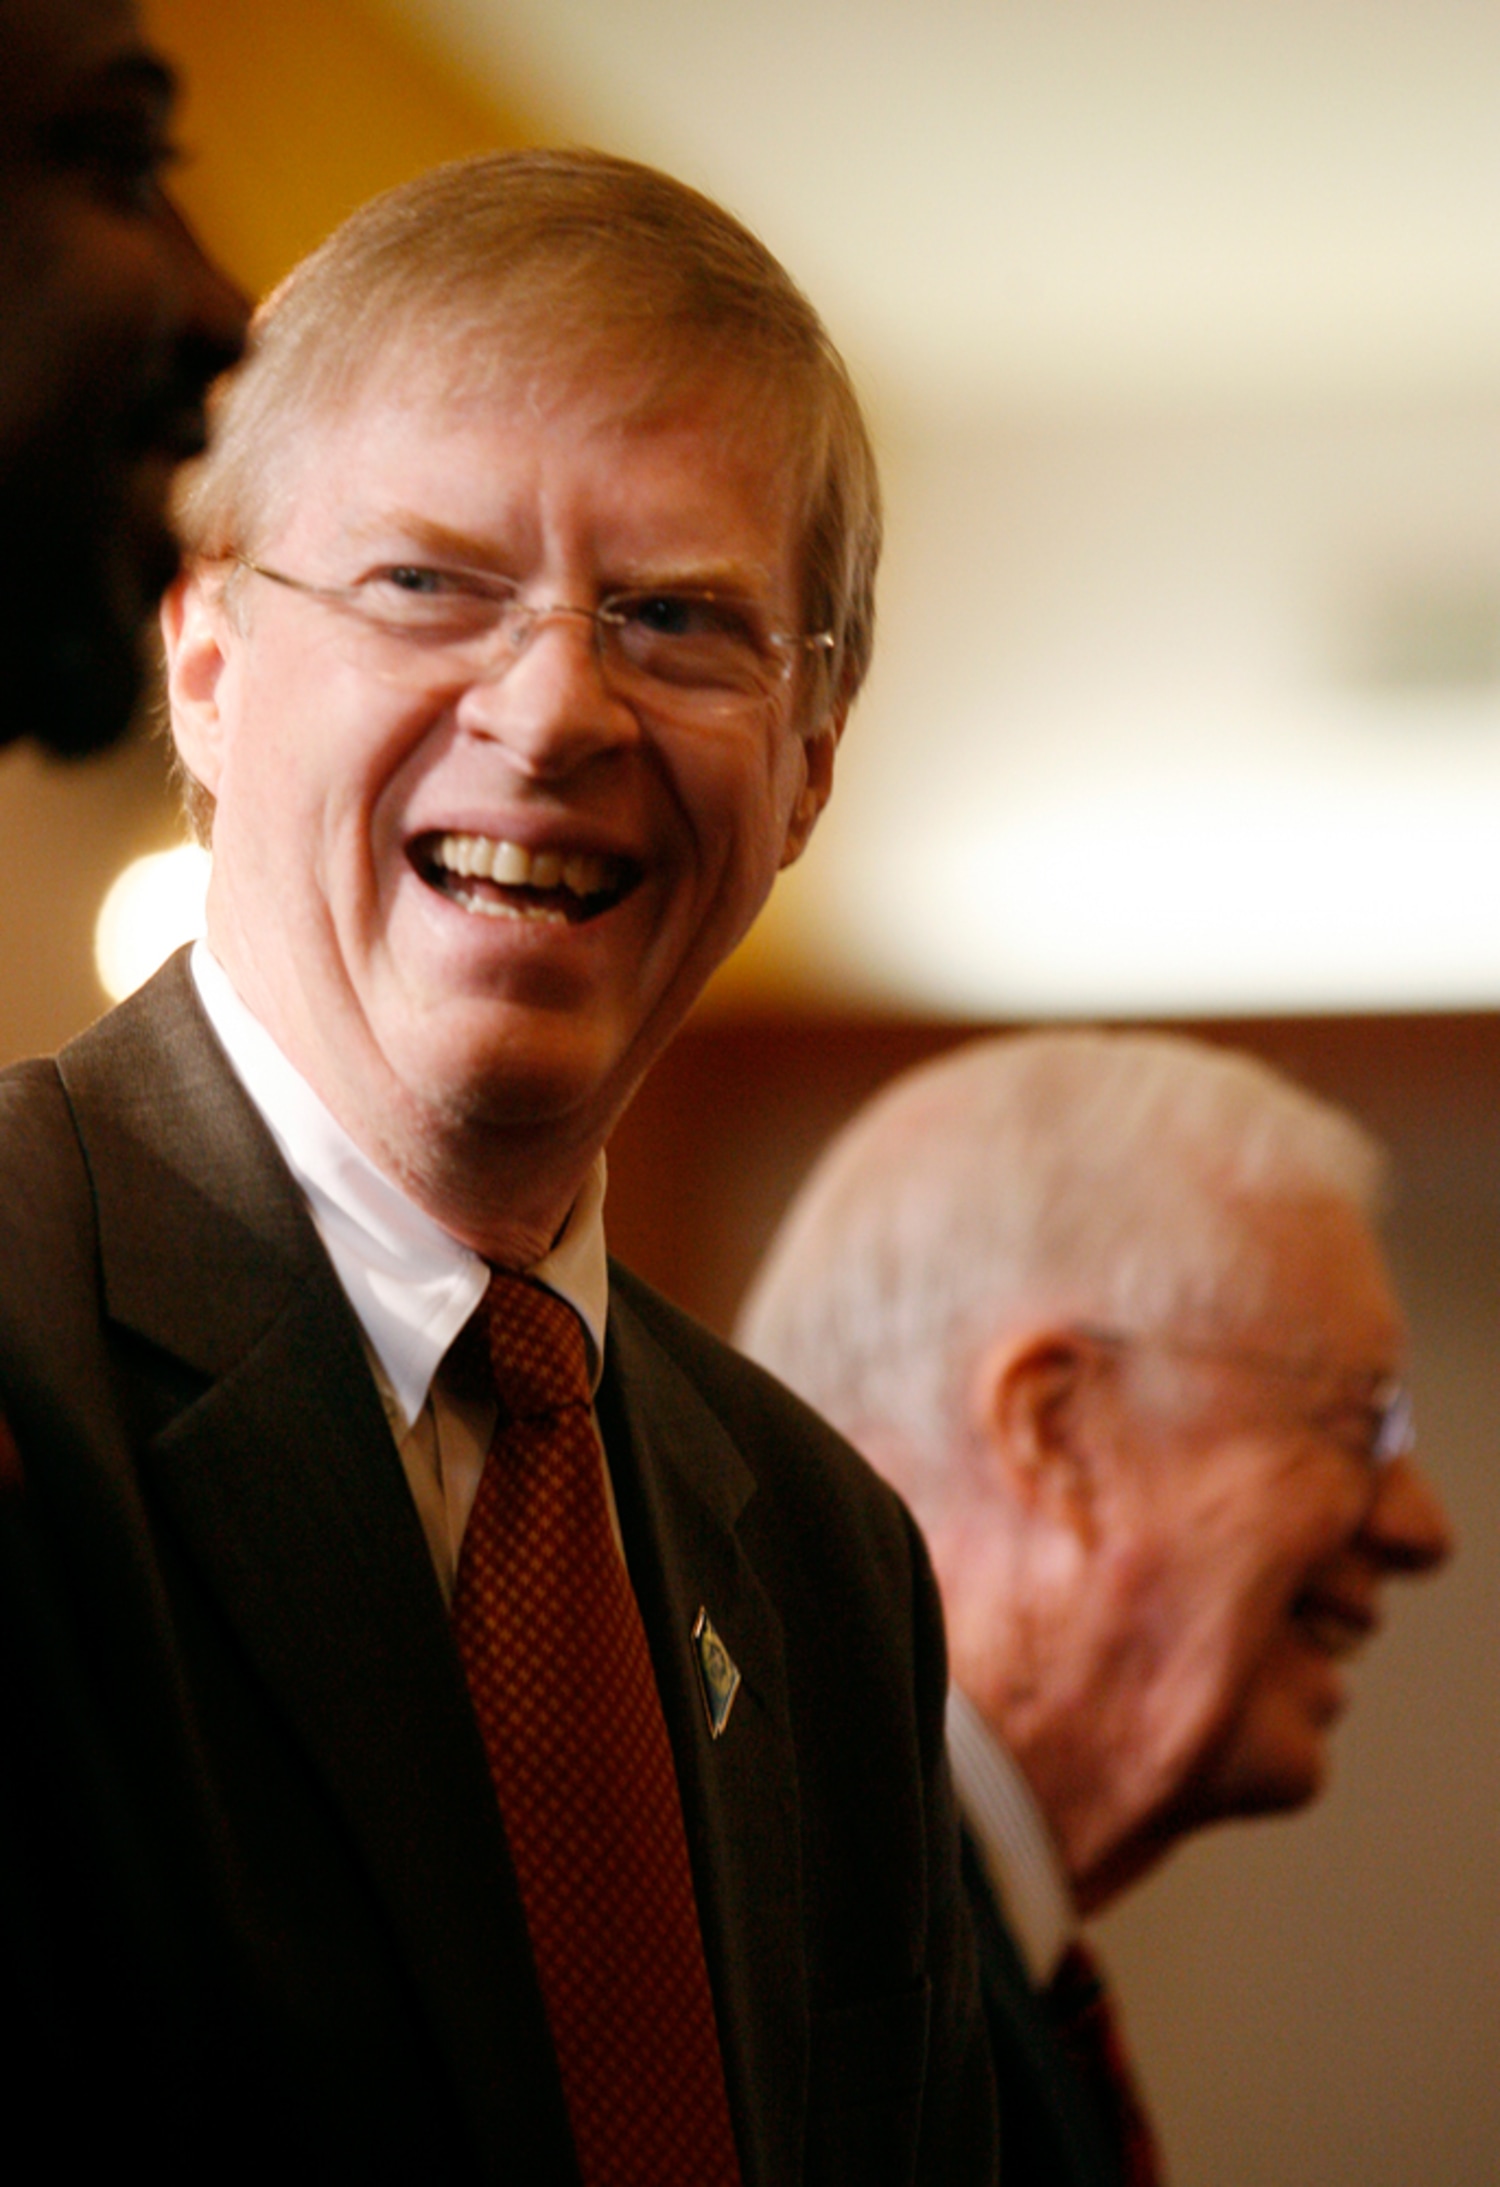 Jimmy Carter helps son in longshot Senate bid